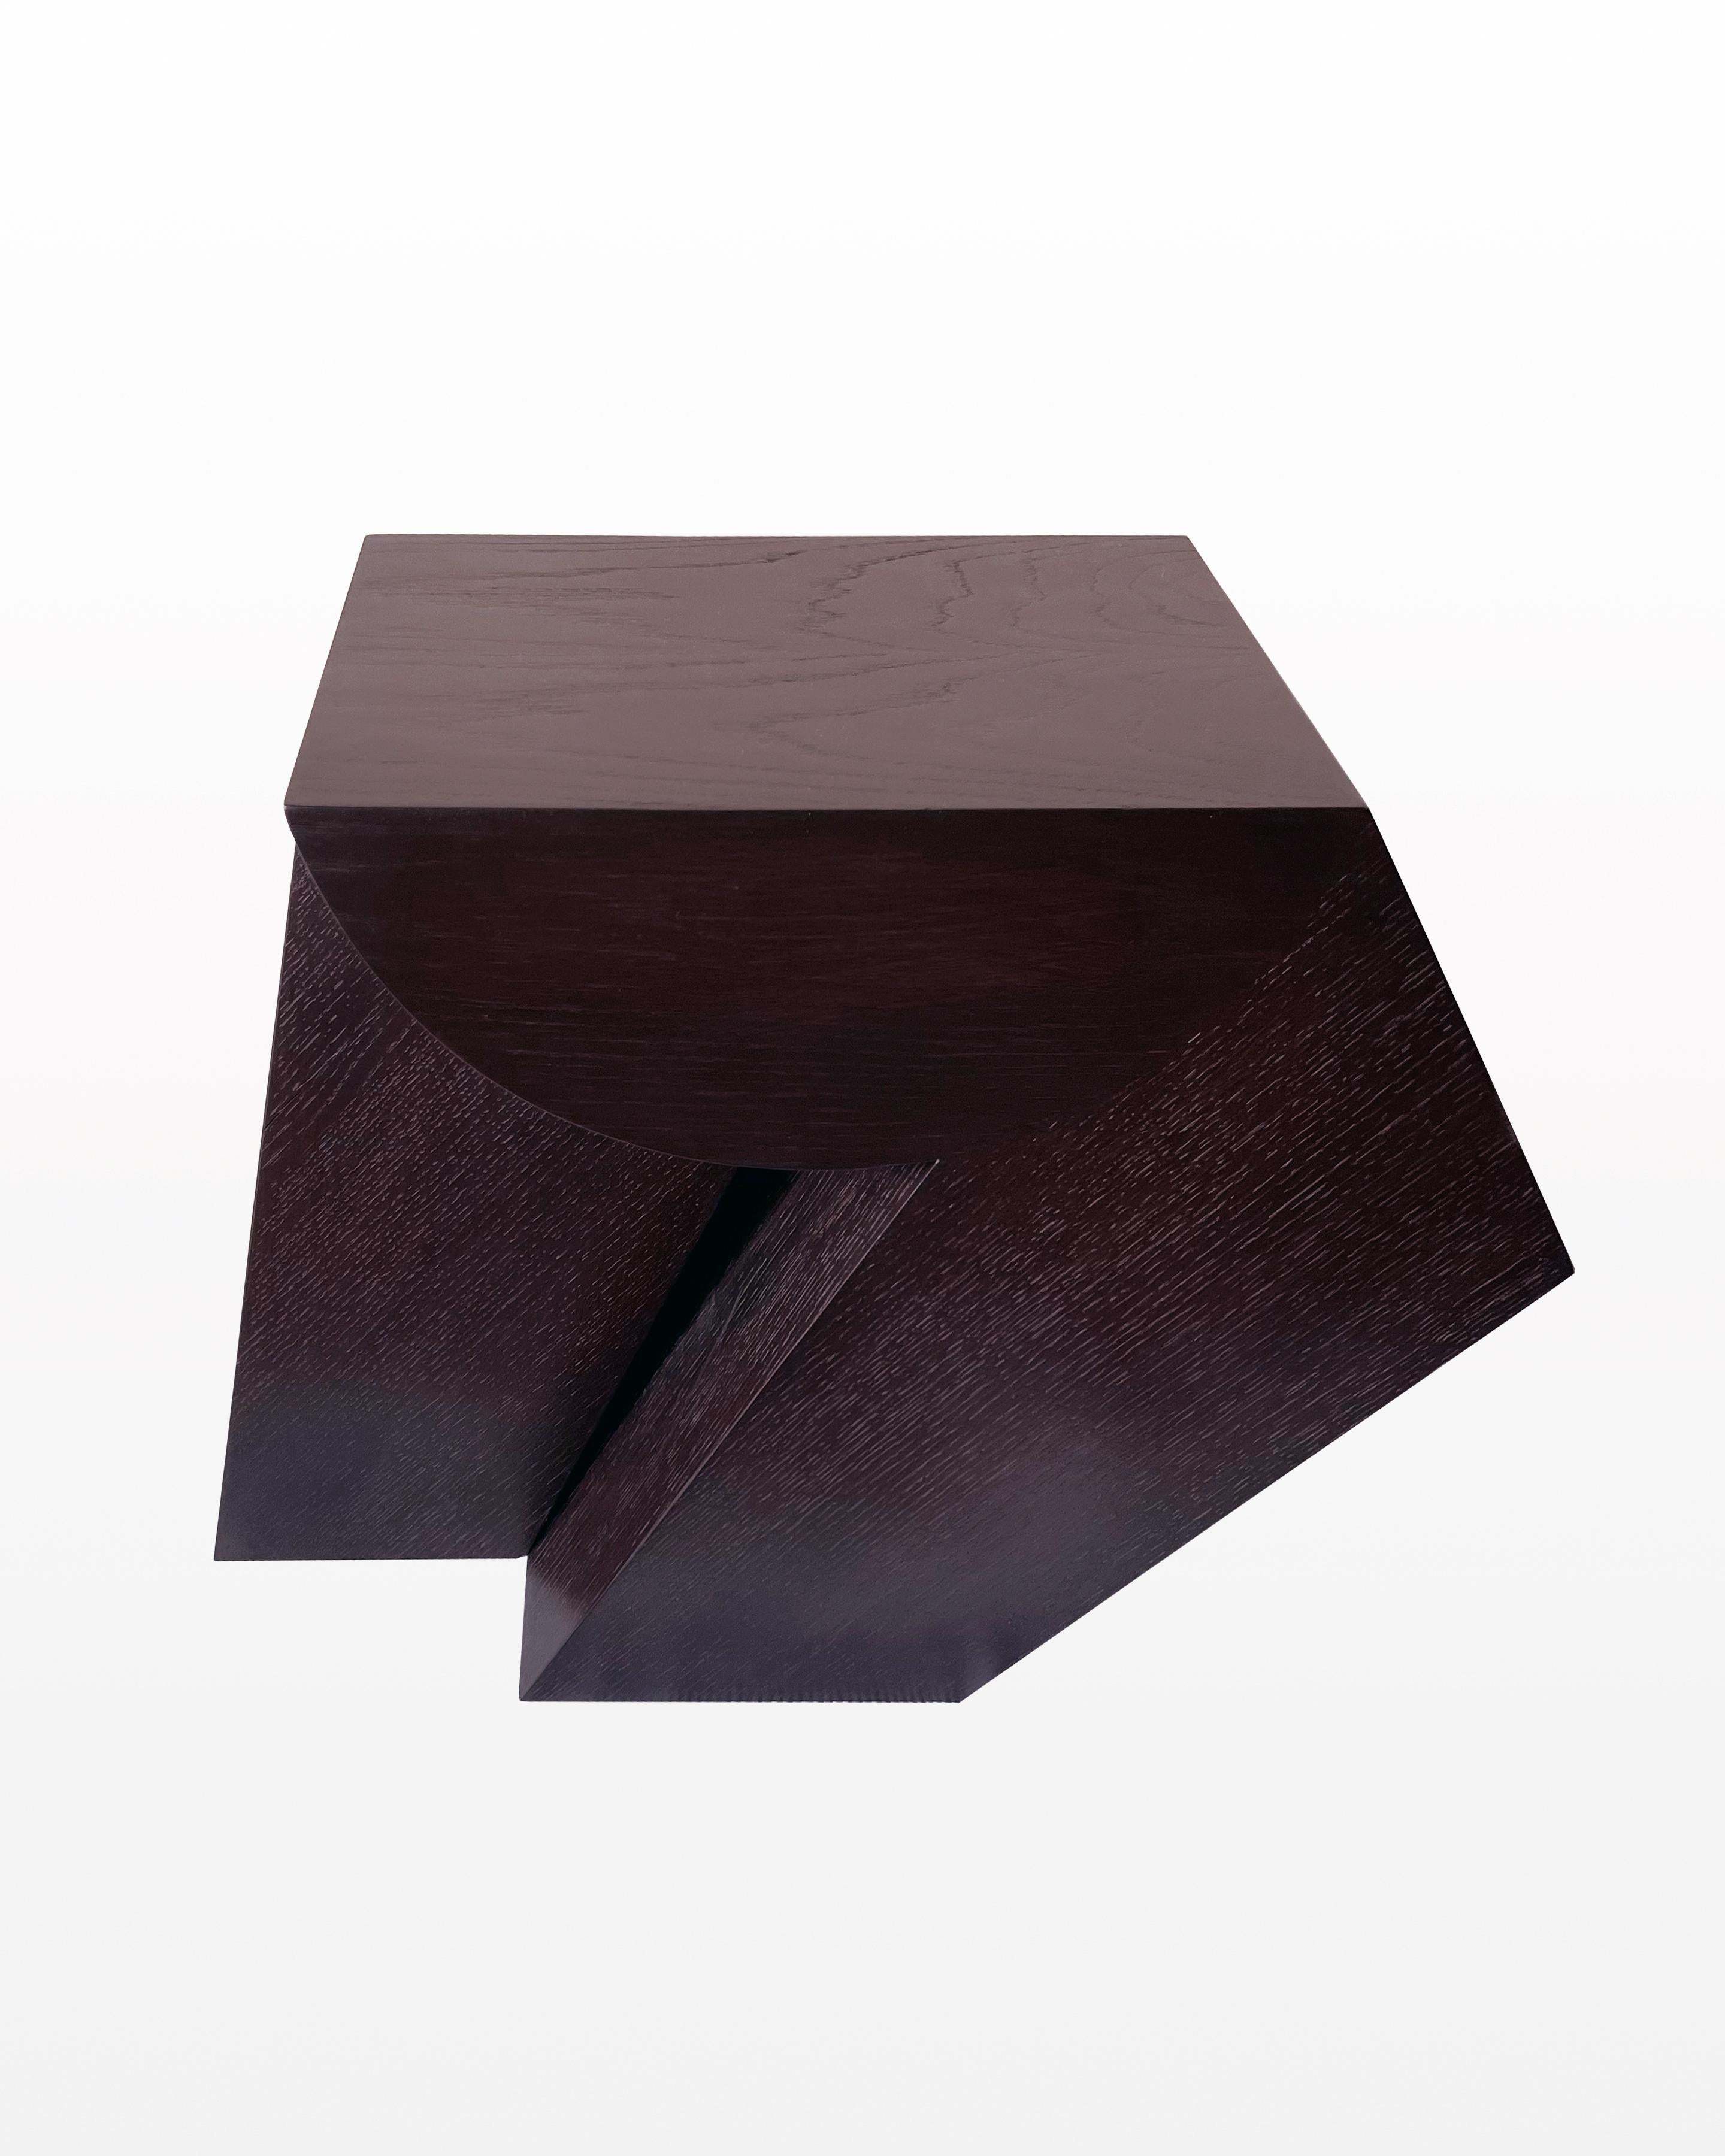 Inspirée par l'art du cubisme, l'Aria explore l'utilisation de formes géométriques et de plans réunis dans le bois, pour former une table fragmentée et multidimensionnelle.  